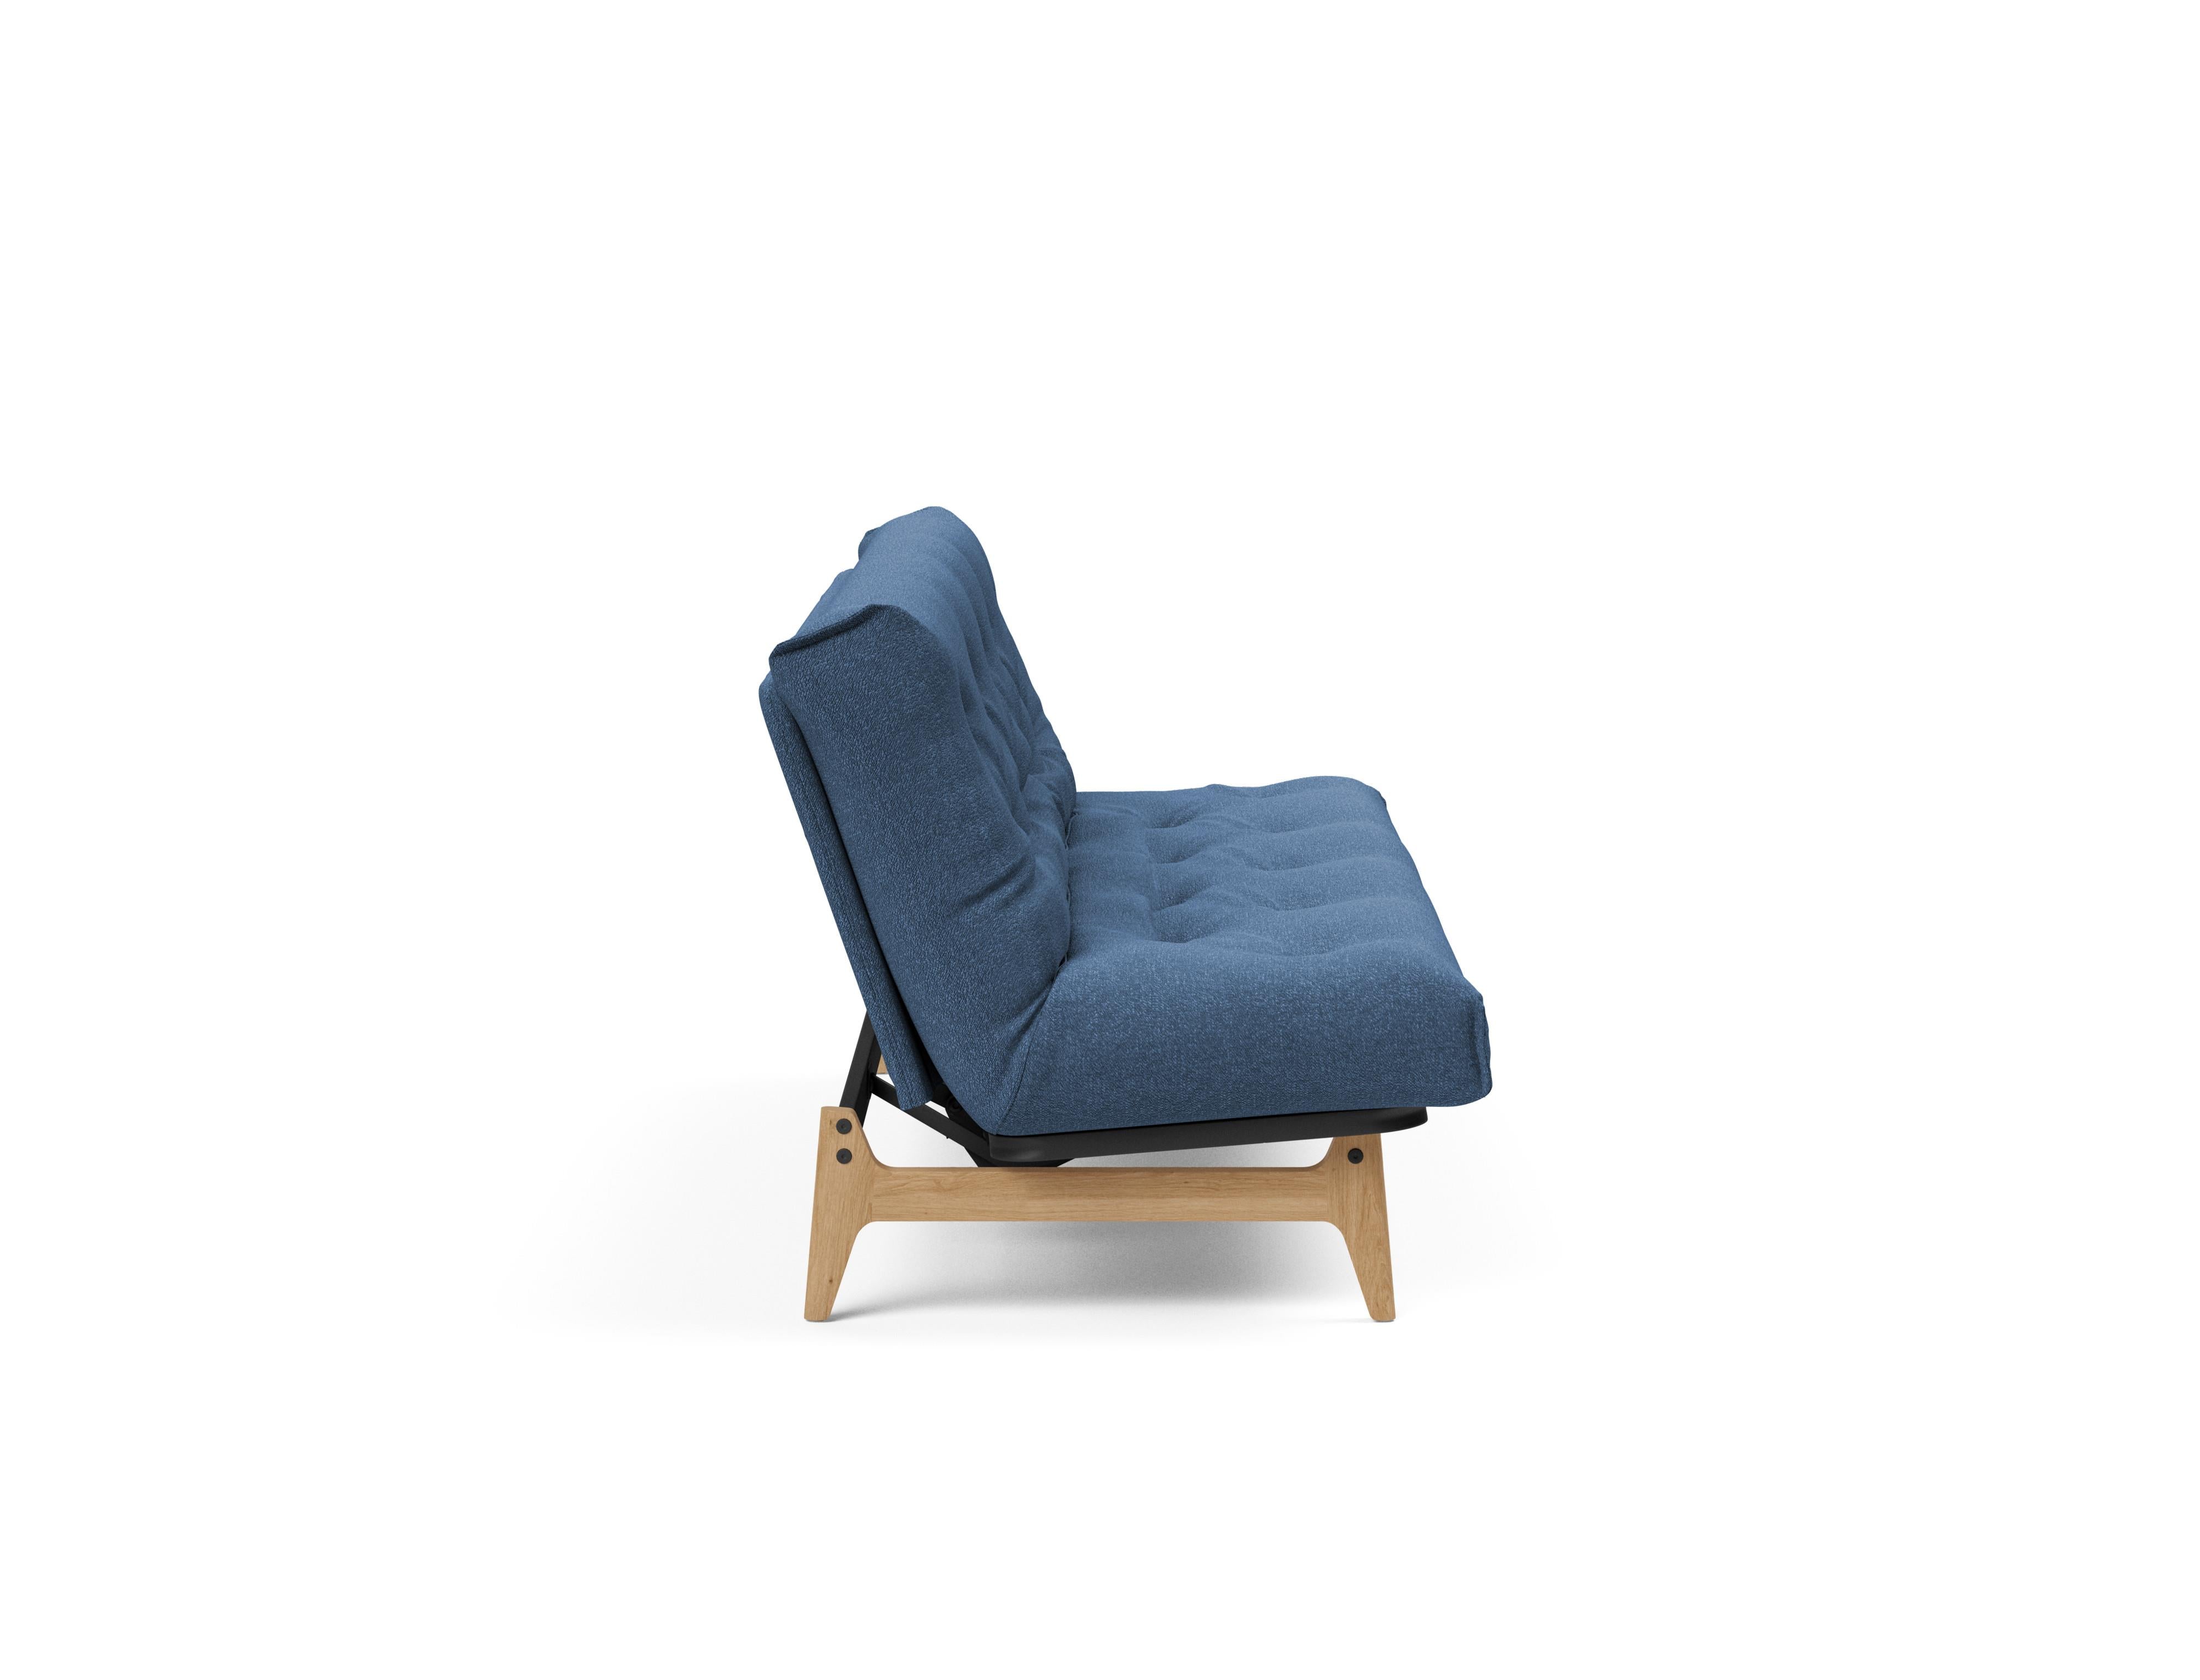 Aslak 120 Bettsofa Nordic in Blau 537 präsentiert im Onlineshop von KAQTU Design AG. Bettsofa ist von Innovation Living